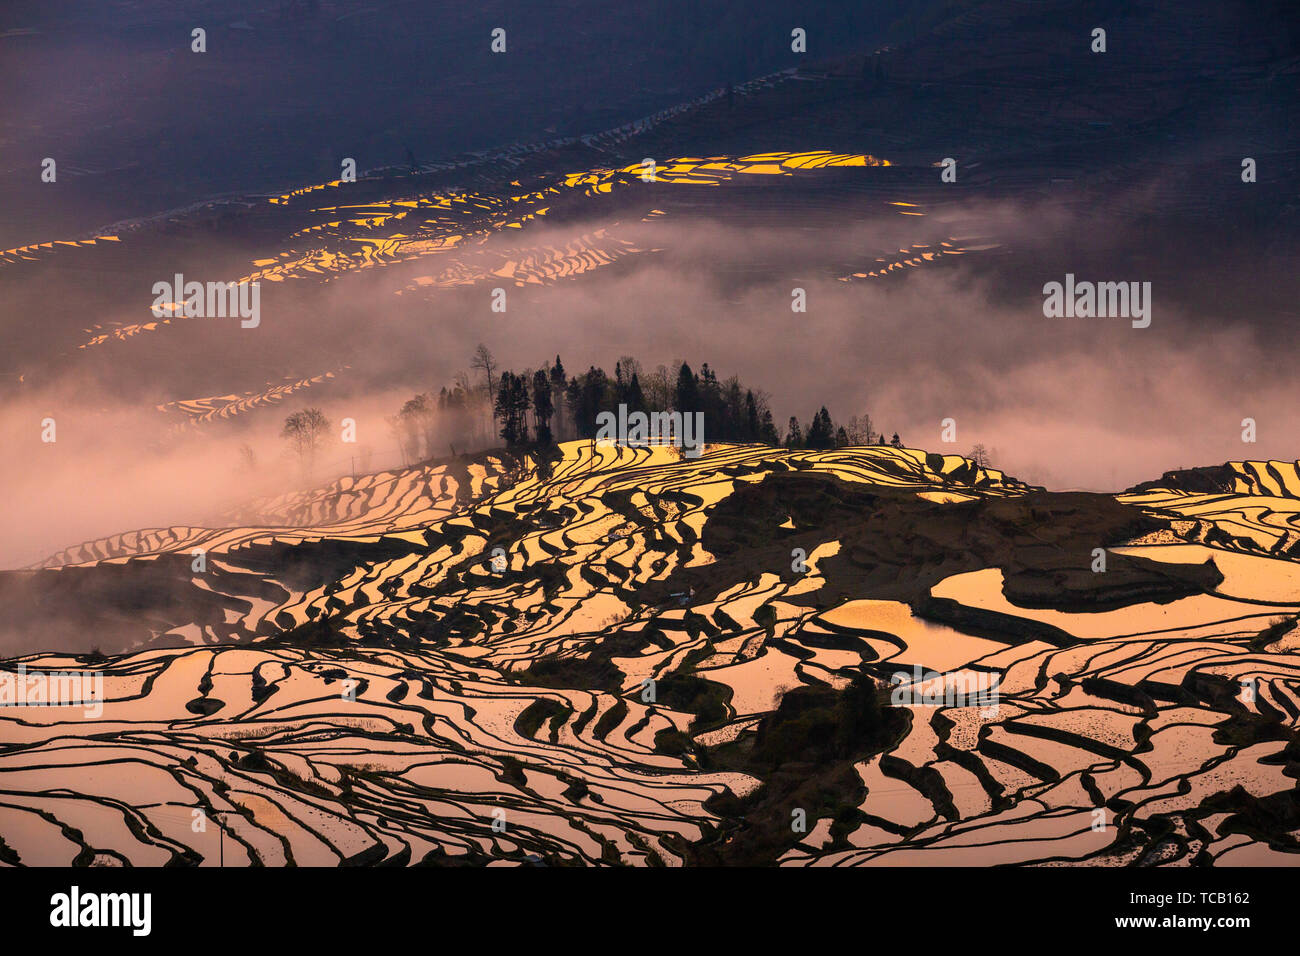 Die Yilao Berg Terrassen in Yuanyang, Yunnan am 13. März 2019 Ist der Moment der Bewässerung und die Felder. Das Meer der Wolken dämpfen auf dem Baum den Sonnenaufgang, den Sonnenuntergang Landschaft des Adlers Mund ist noch charmanter und die Liebe, die Feder und den blauen Terrassen umgeben das Dorf. Diese sind atemberaubend für Touristen. Stockfoto